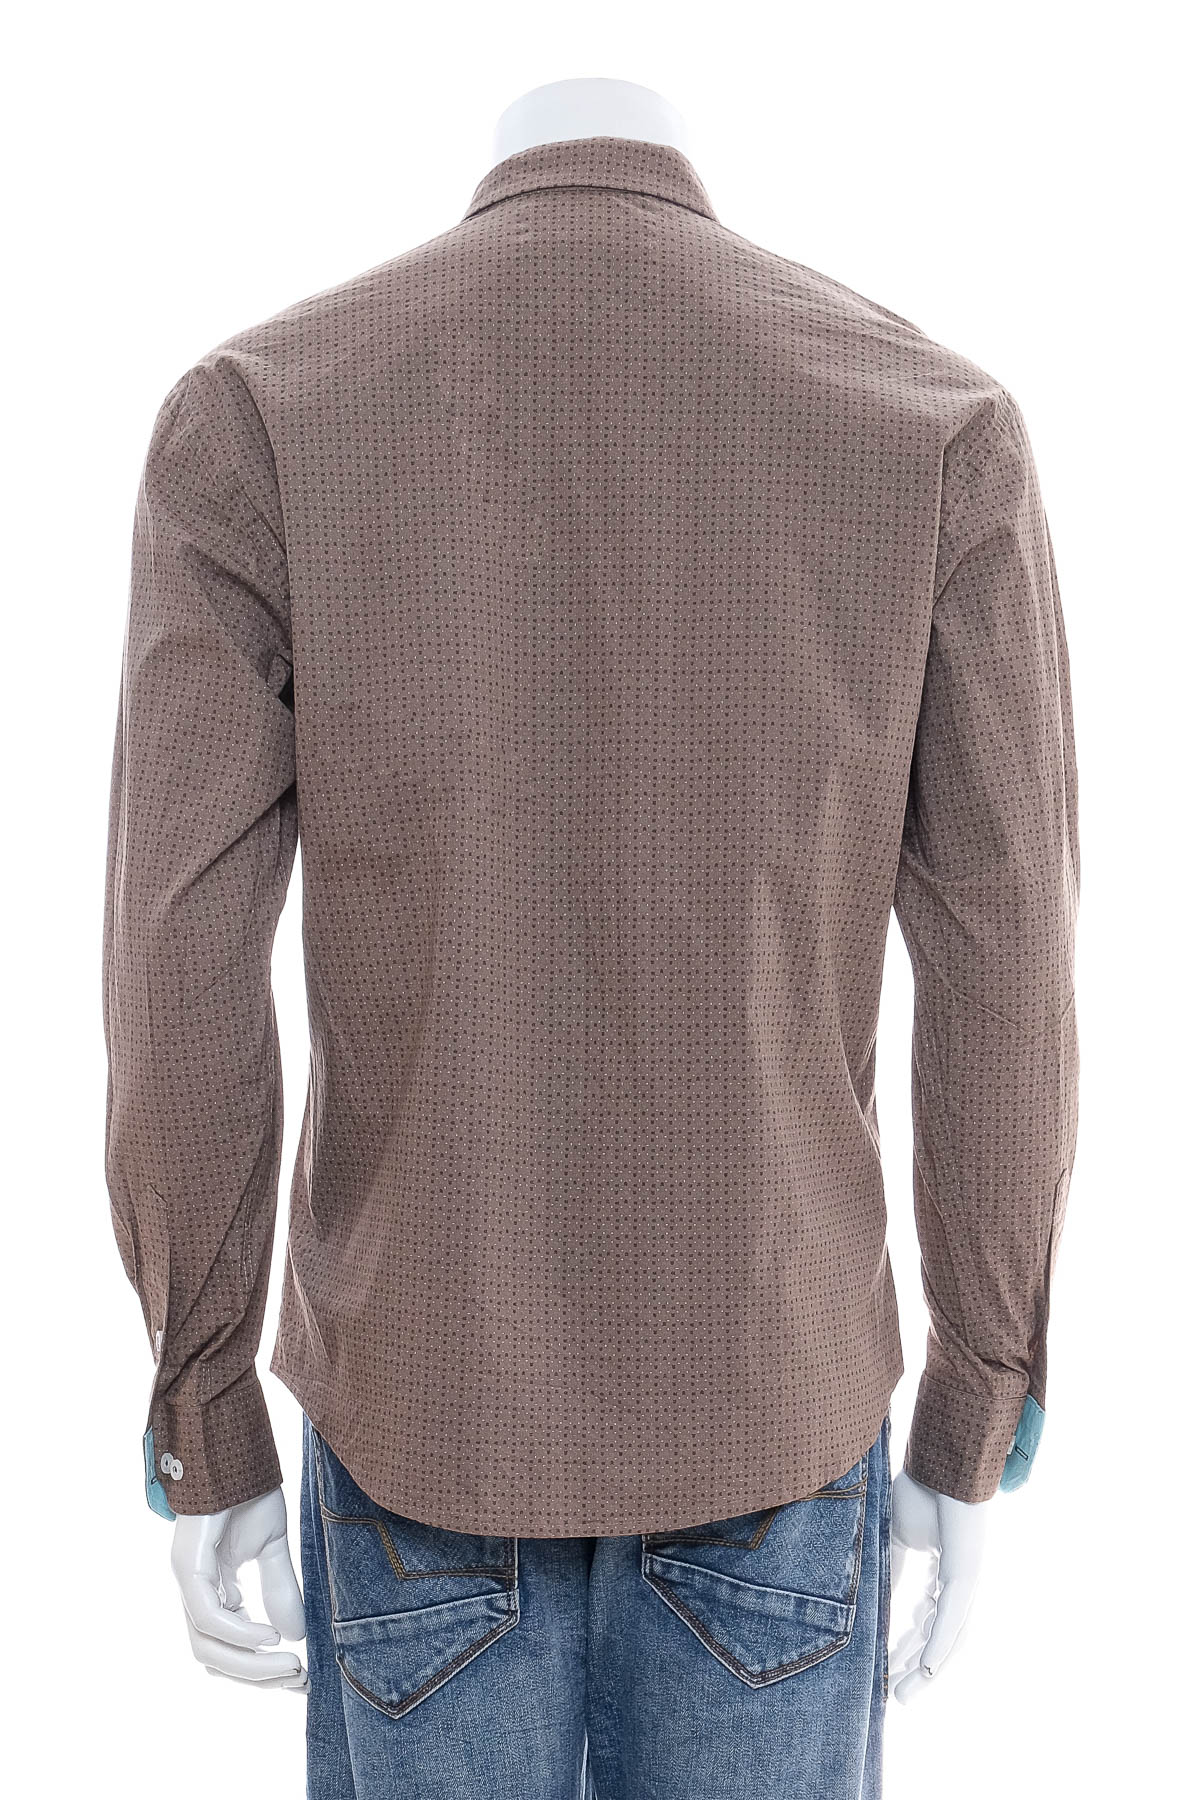 Ανδρικό πουκάμισο - Paul Smith - 1